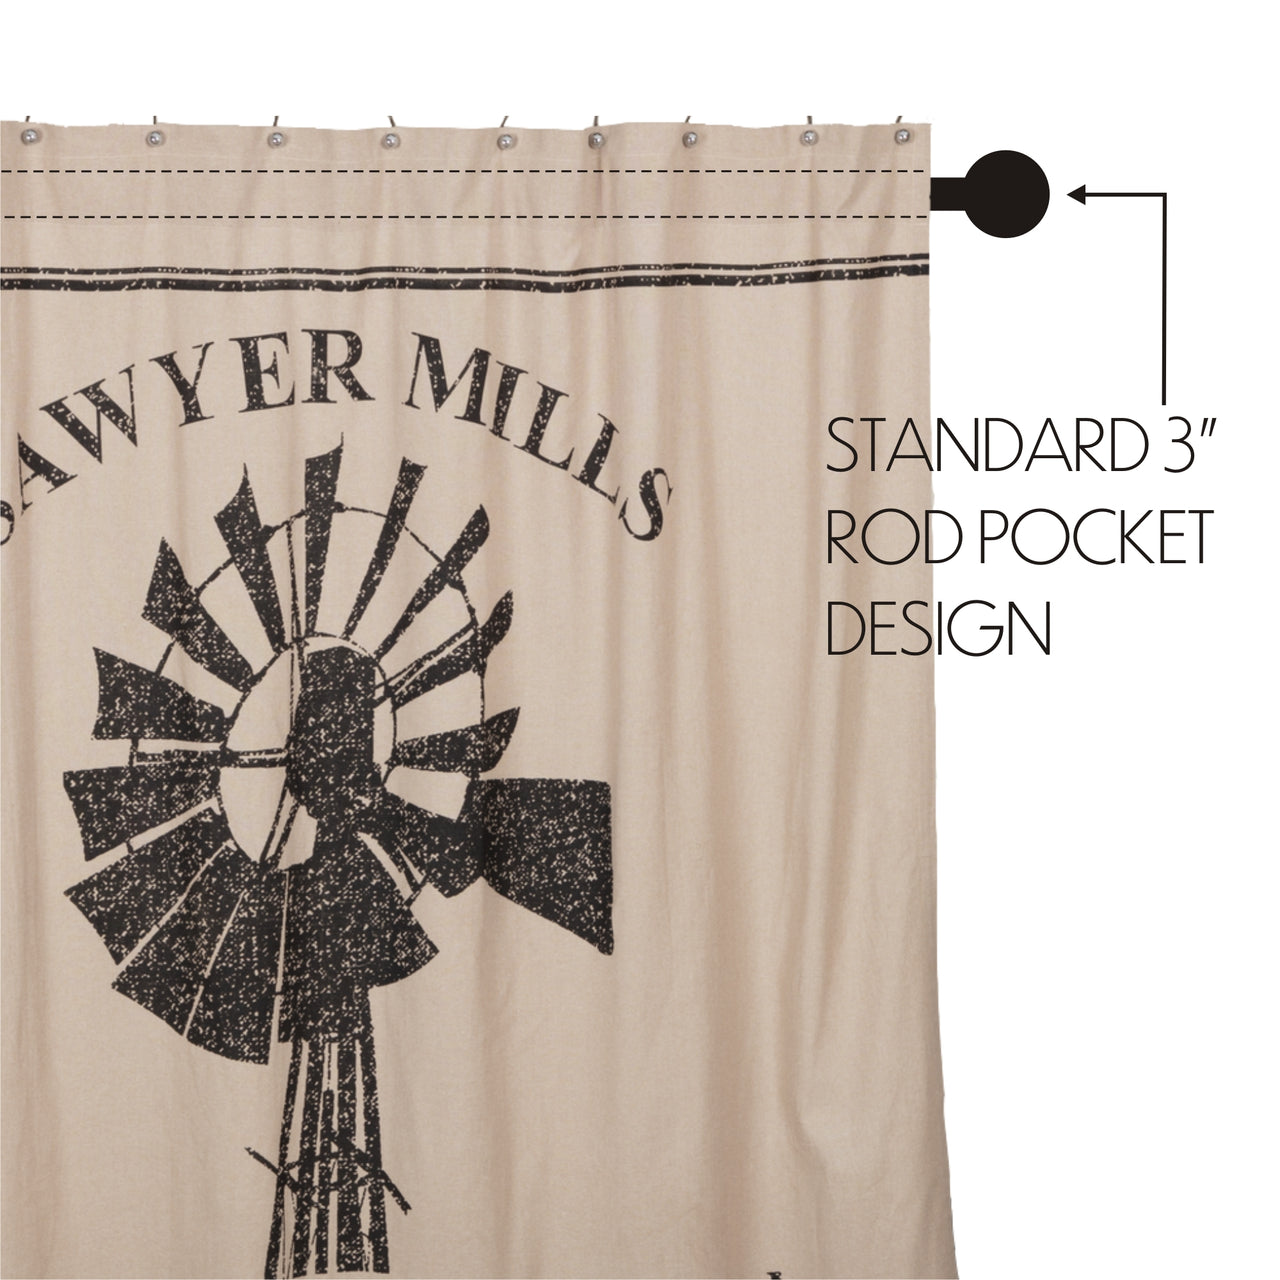 Sawyer Mill Charcoal Windmill Shower Curtain 72"x72"